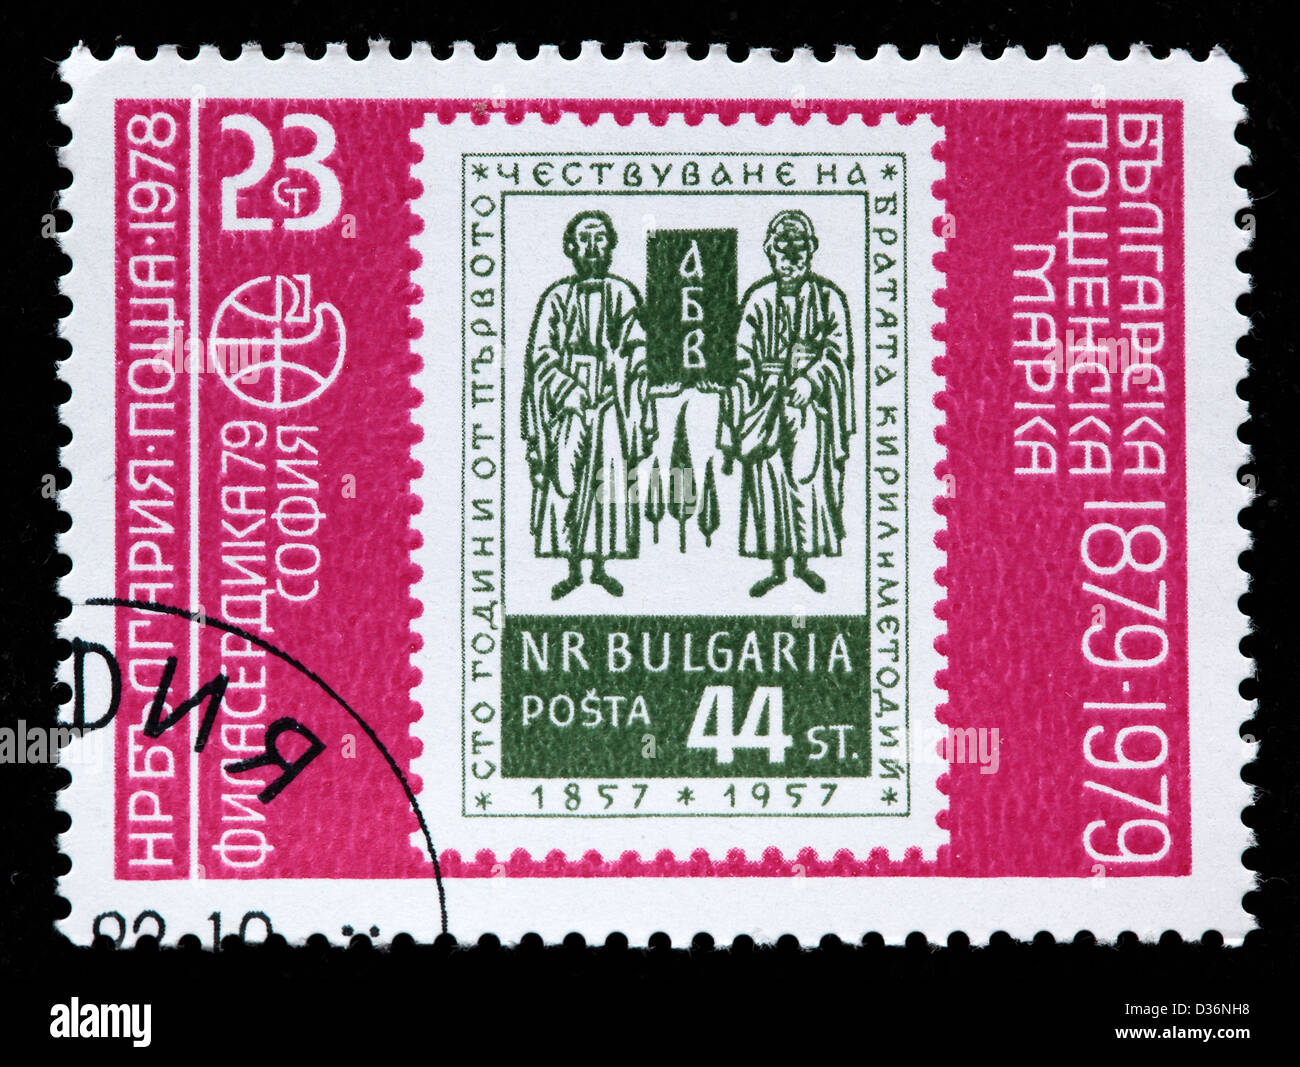 Bulgarian postage stamp, Bulgaria, 1979 Stock Photo